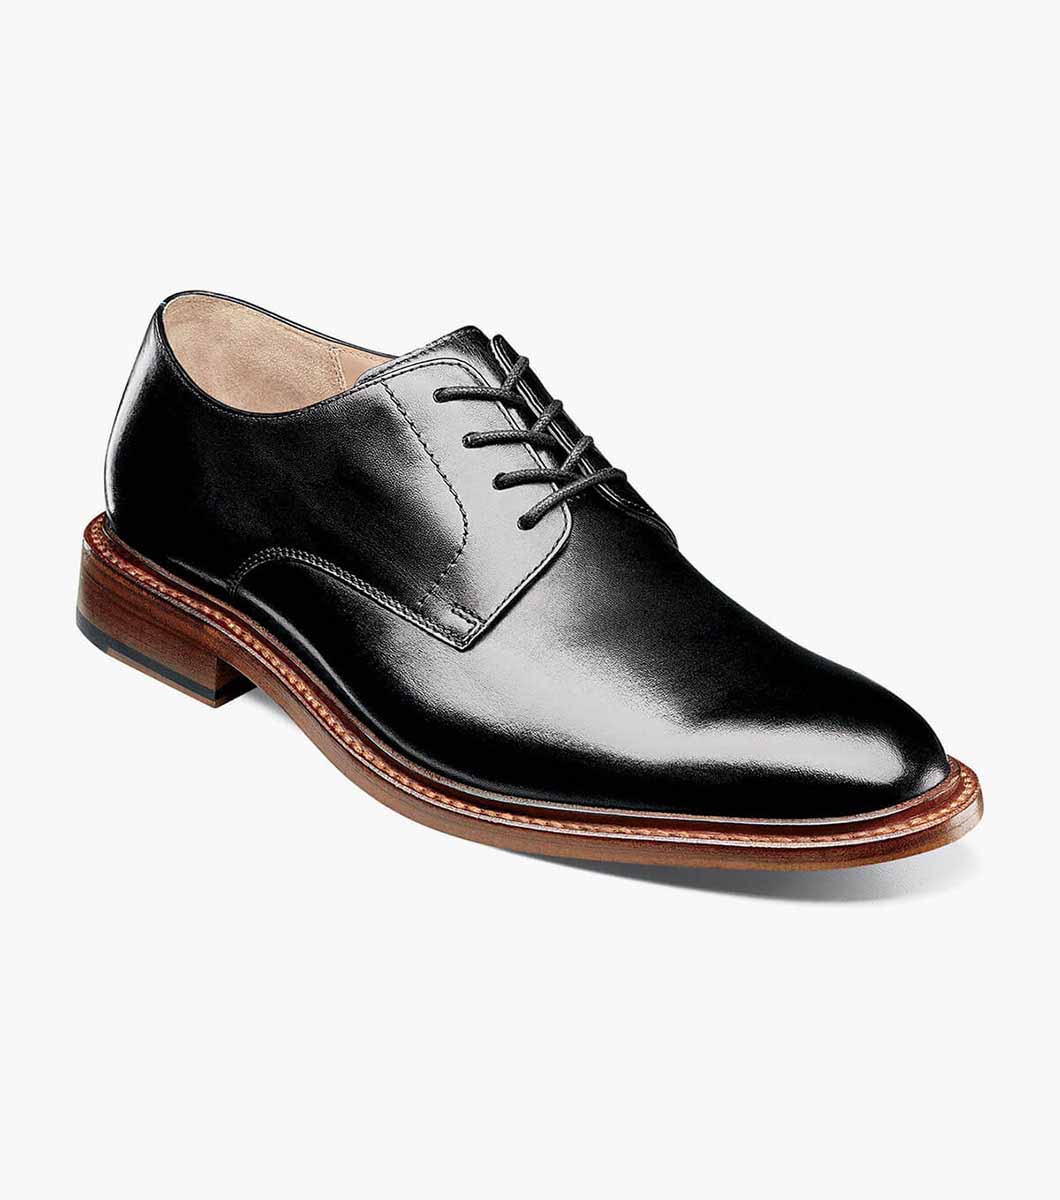 Men’s Dress Shoes | Black Plain Toe Oxford | Florsheim Mercantile